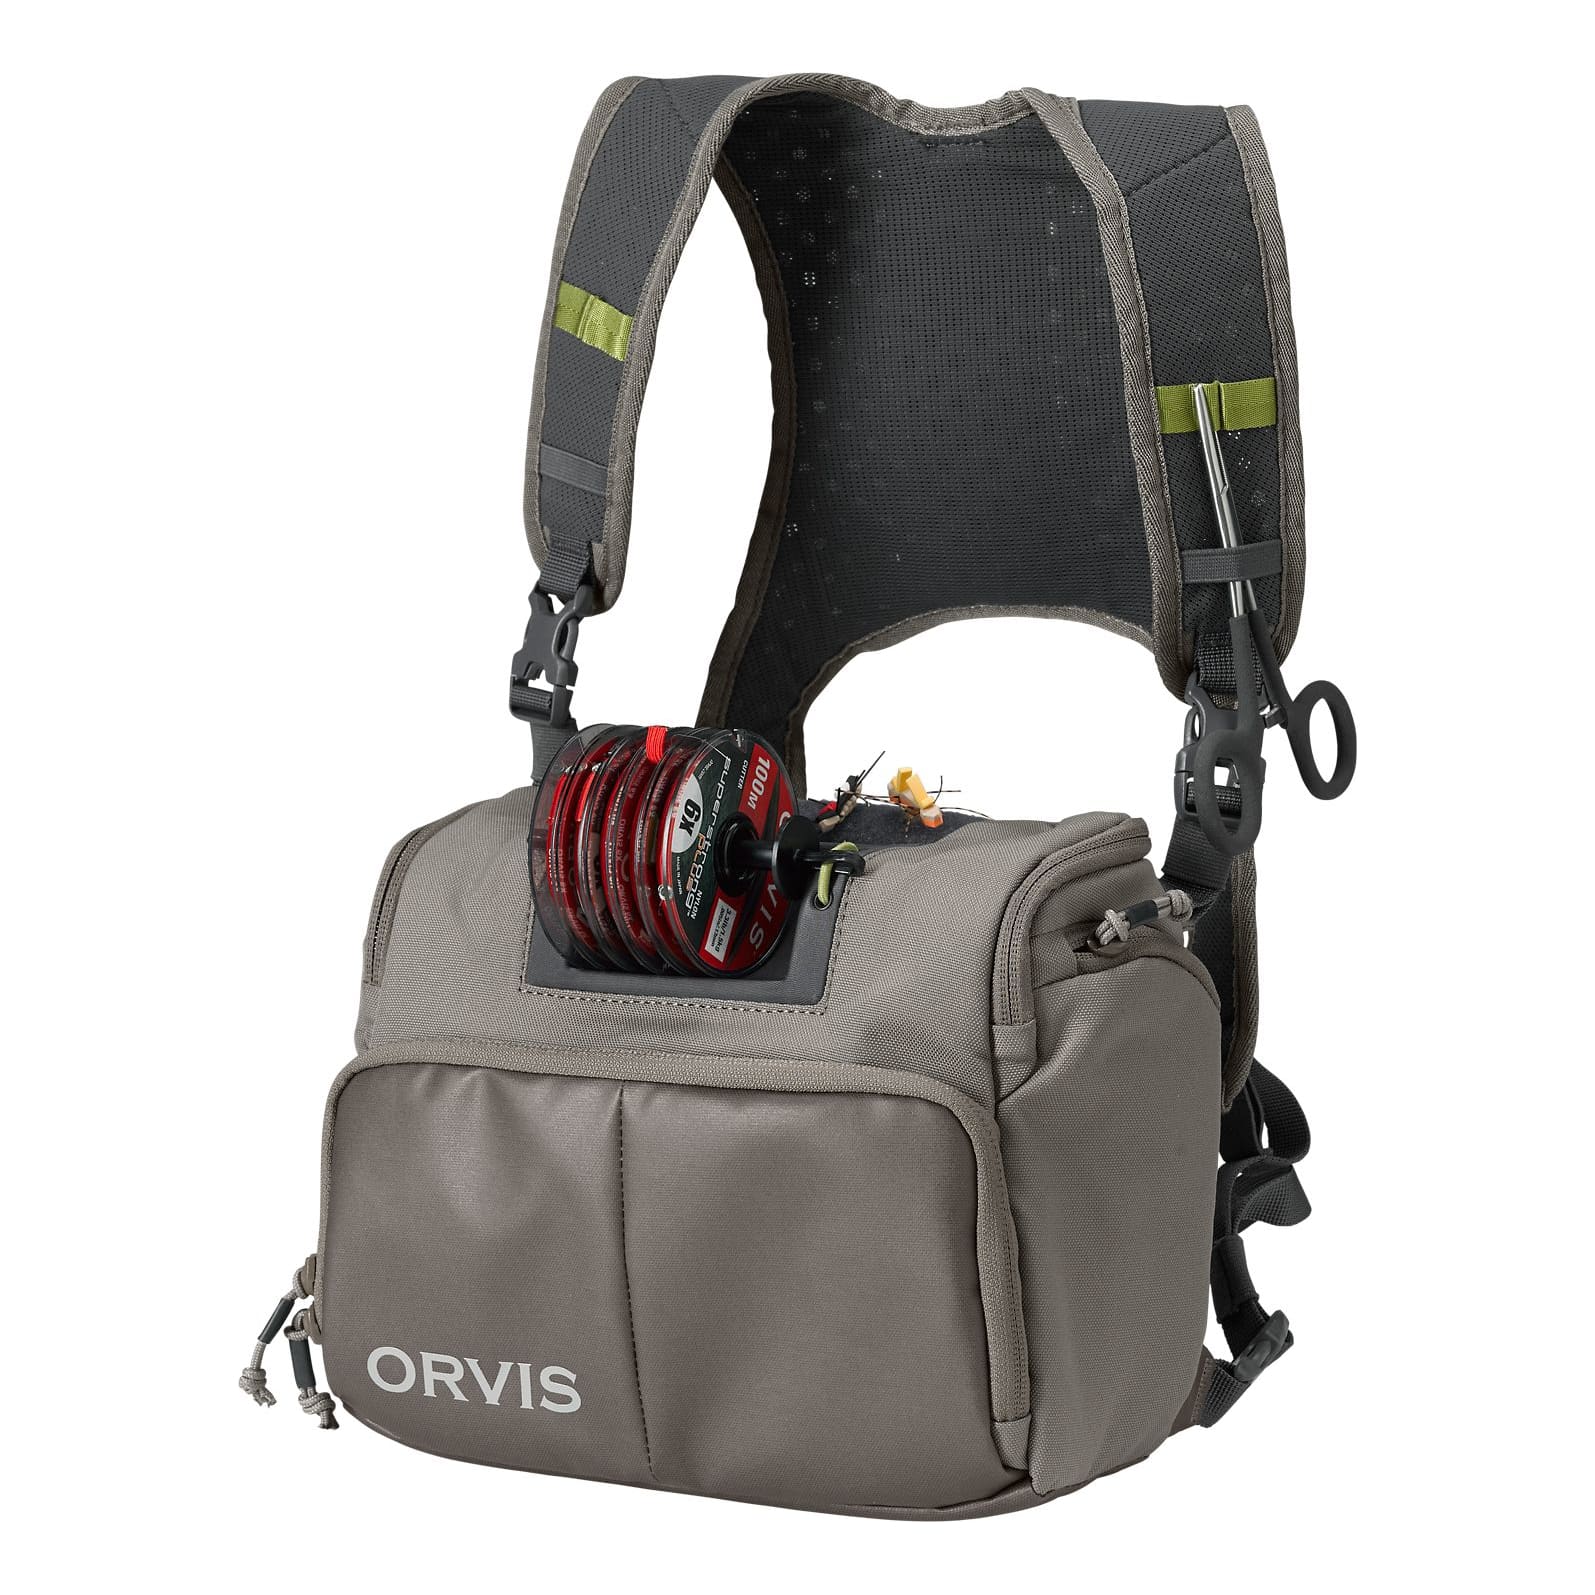 Orvis PRO Waterproof Backpack, Best Waterproof Fishing Backpacks, Buy Orvis  Fishing Packs Online